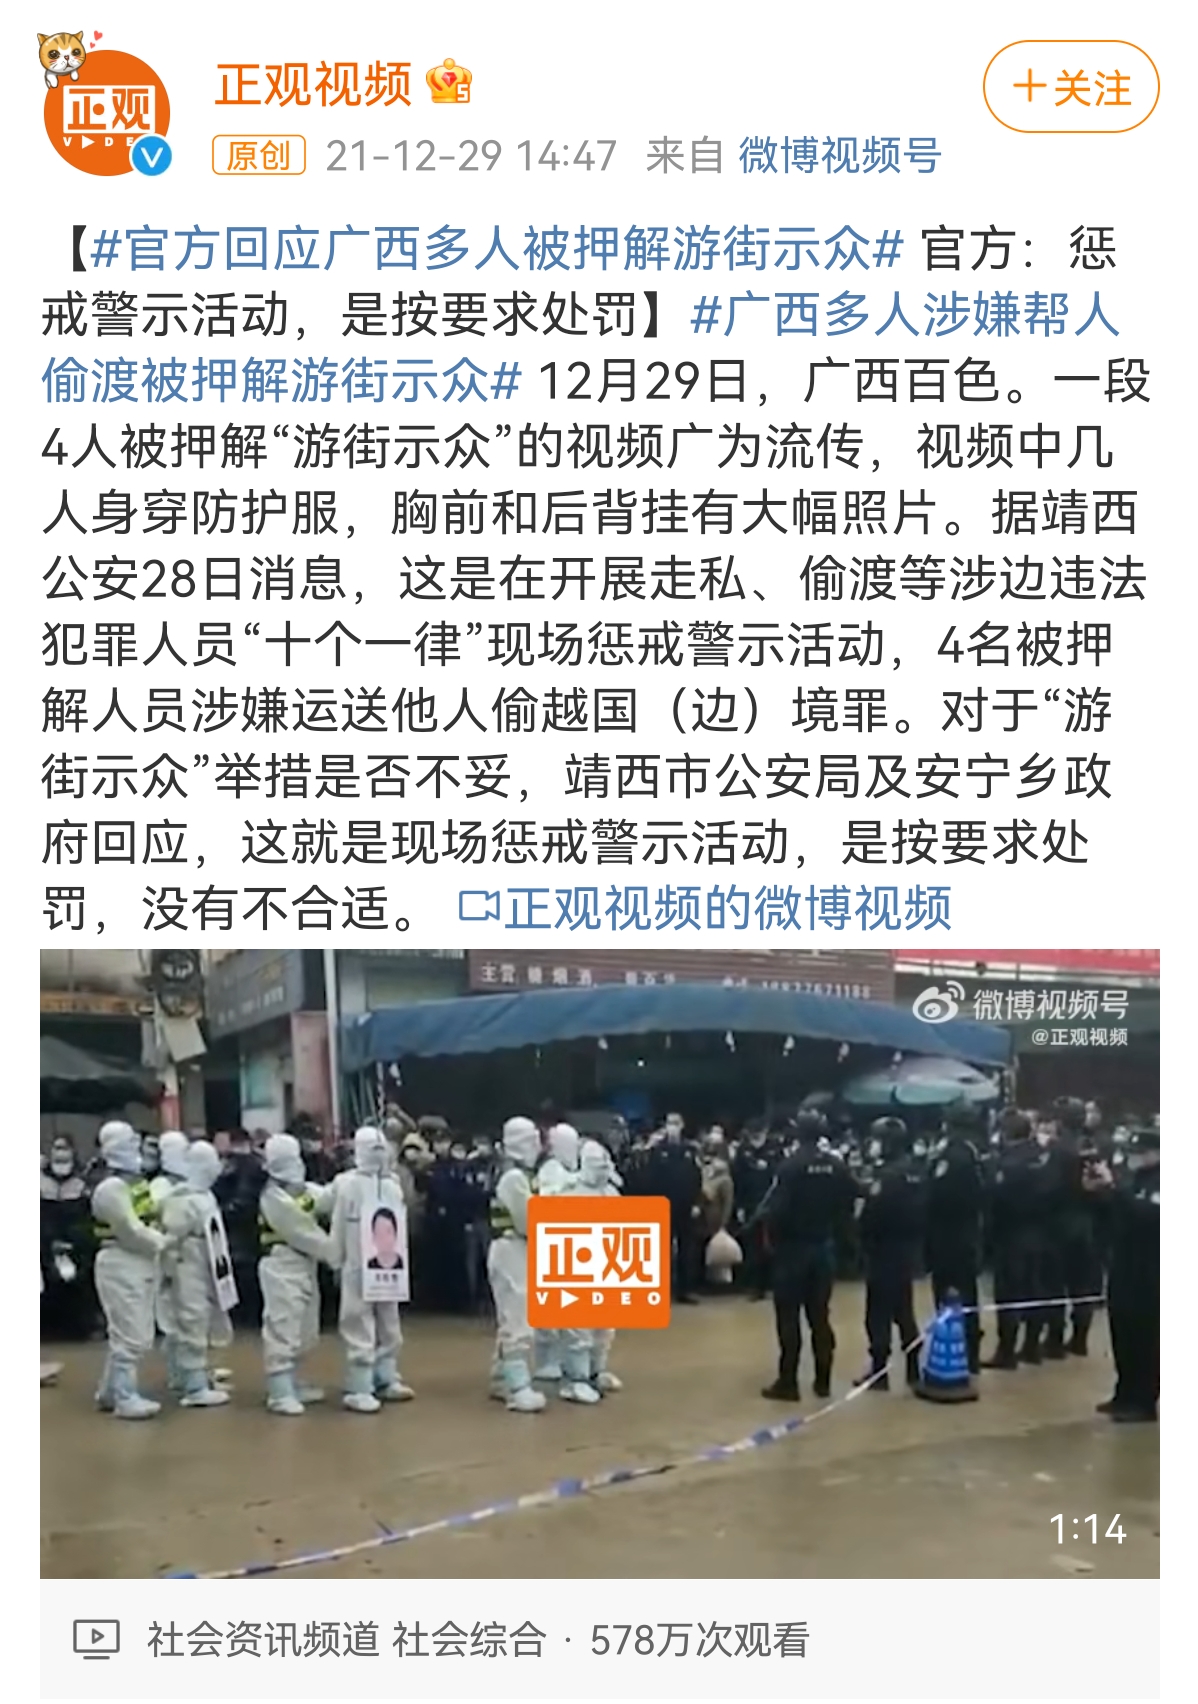 ‘정관스핀’이 공식 계정에 올린 ‘공개 처벌’ 영상과 기사는 하루 만에 삭제됐다. (출처: ‘정관스핀’ 웨이보 계정)